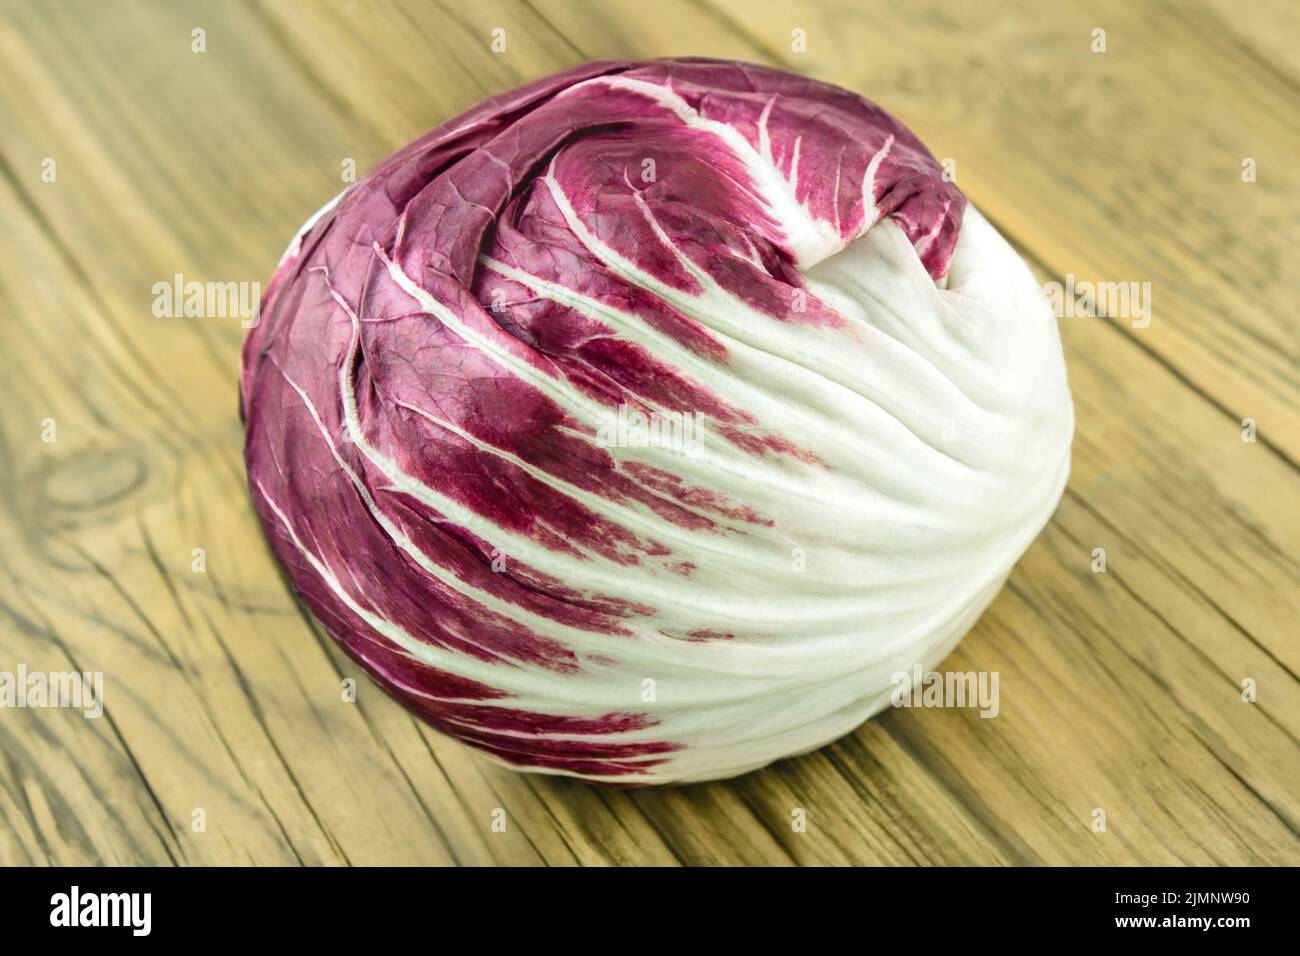 1 Radicchio salad on wooden background close up Stock Photo